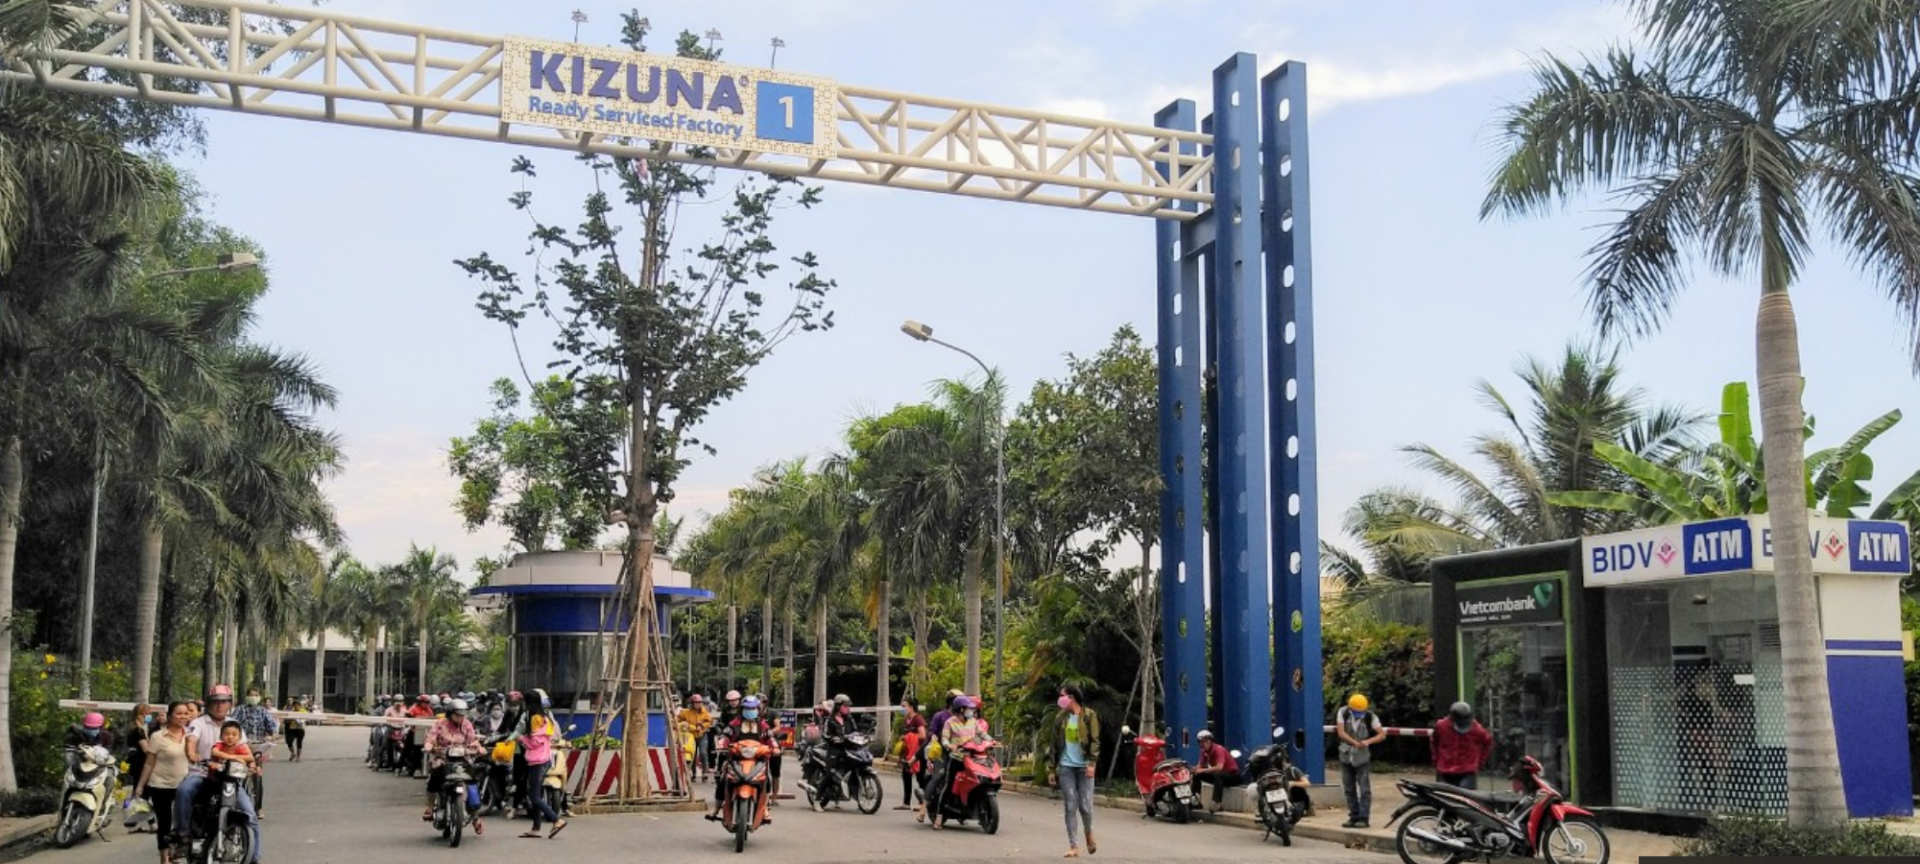 KIZUNA 1 - READY SERVICED FACTORY